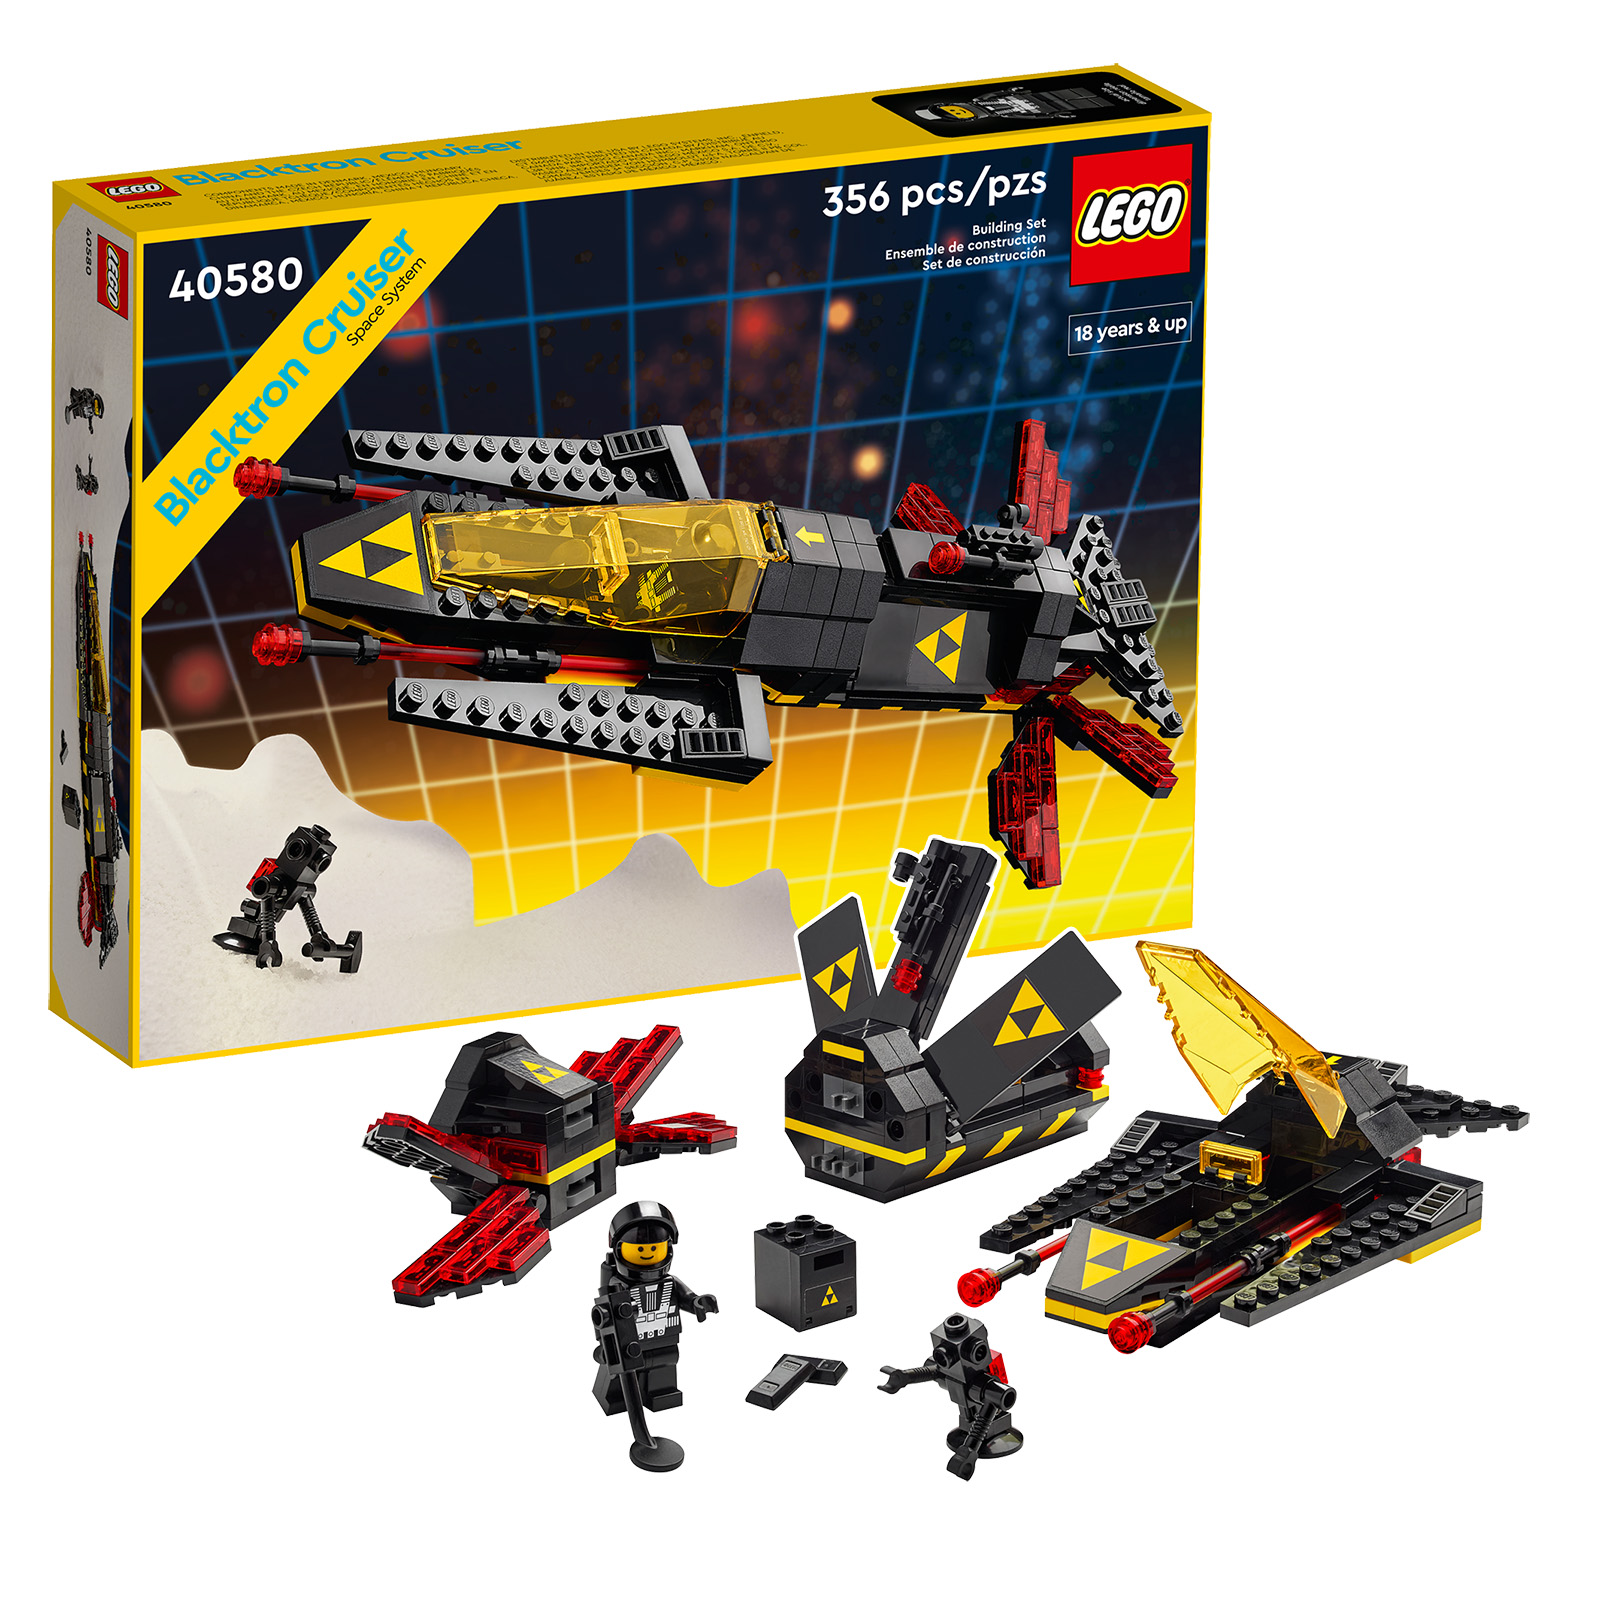 Sa LEGO Shop: Mga huling oras para makuha ang 40580 Blacktron Cruiser na libre mula sa 190 € ng pagbili